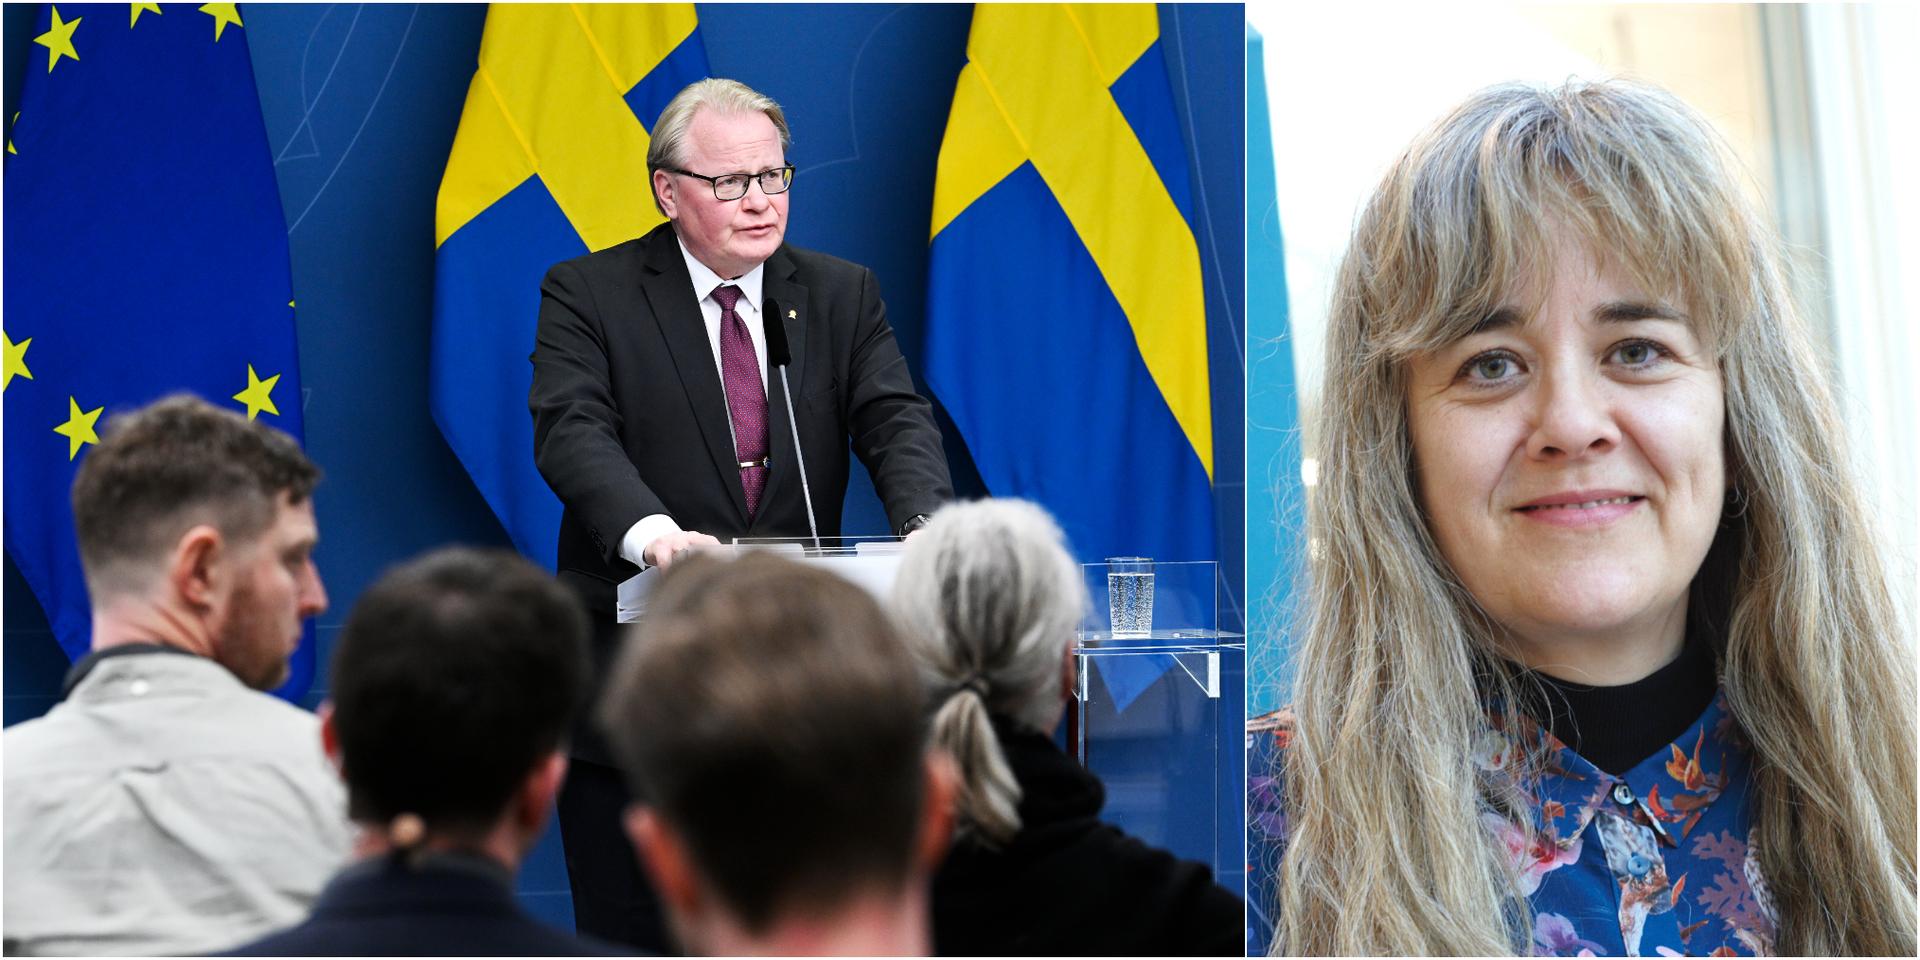 Att Sverige exporterar vapen till Ukraina bidrar inte till fred i någon signifikant mening. Vi menar att det är oöverlagt och att det sänder ett negativt symboliskt budskap – Sverige tror på vapenmakt, skriver debattören.